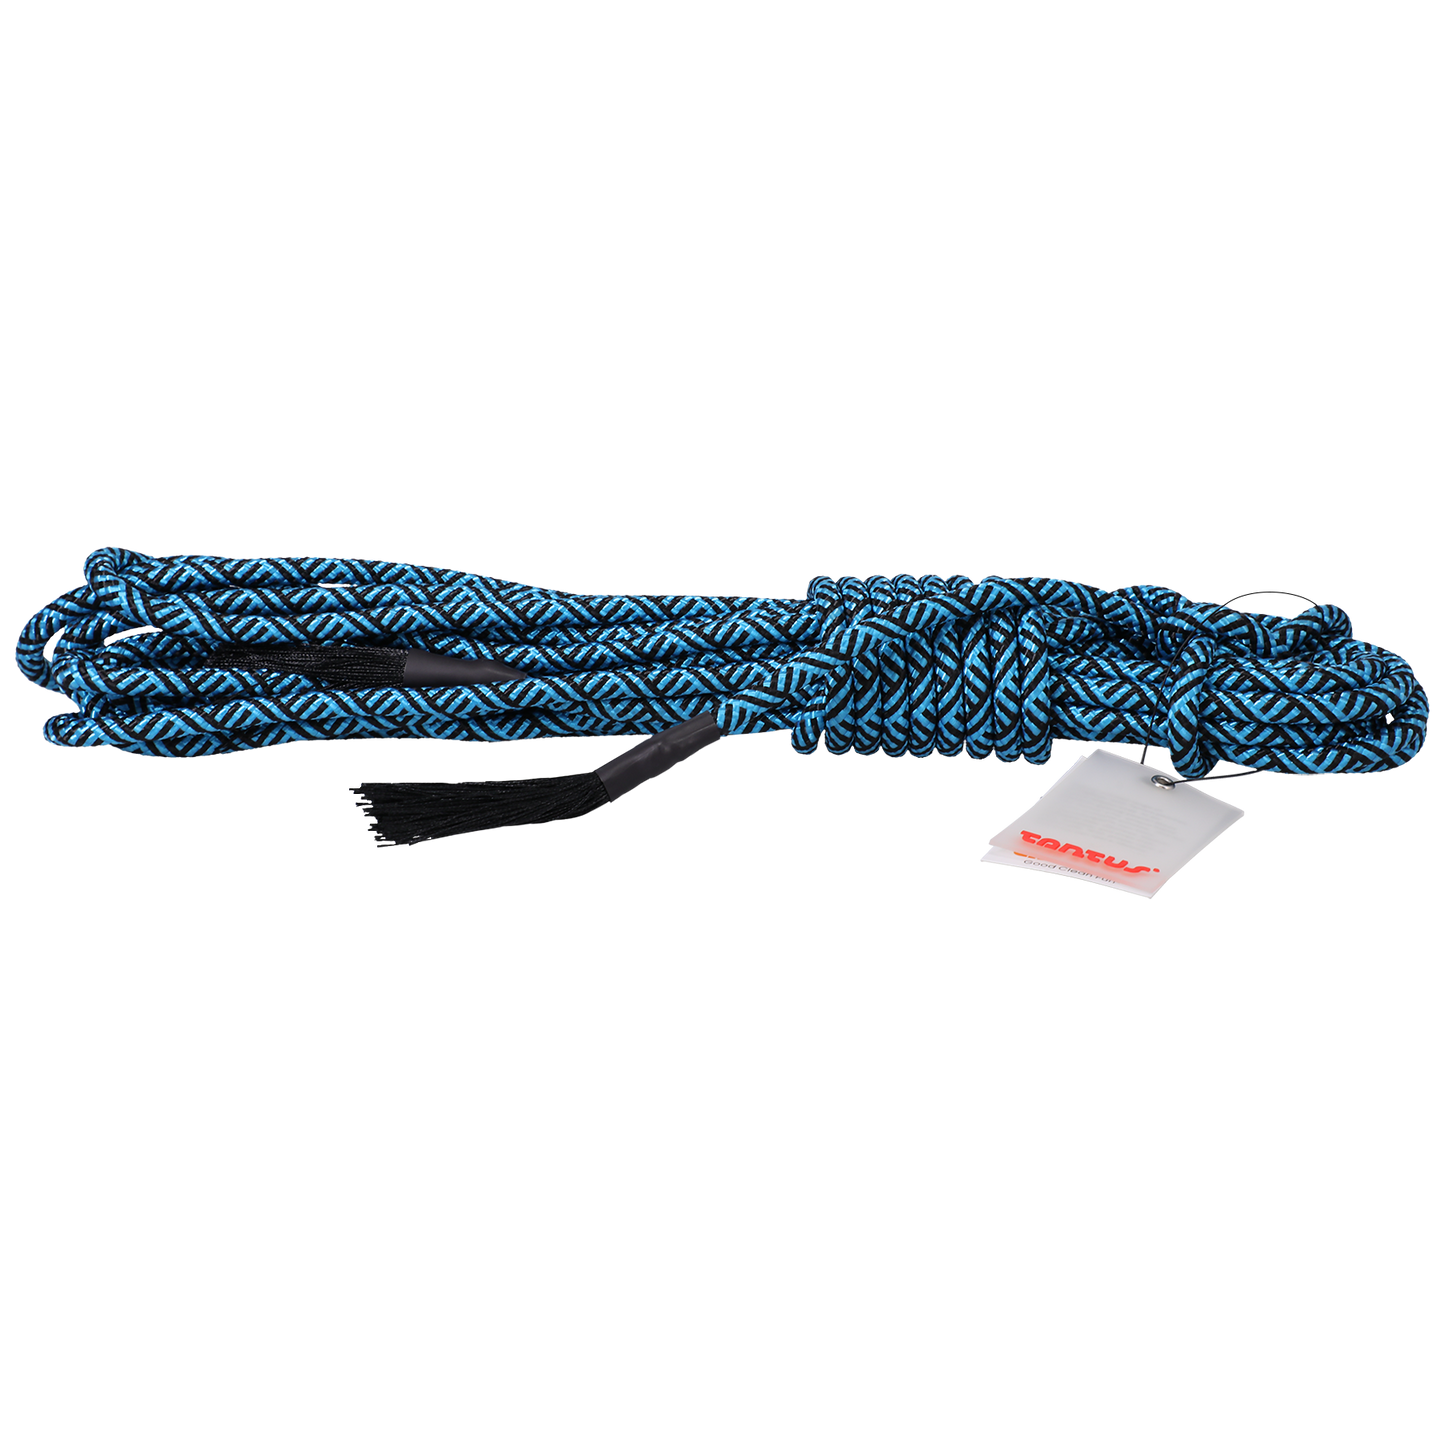 Rope - 30 feet - Azure, Onyx